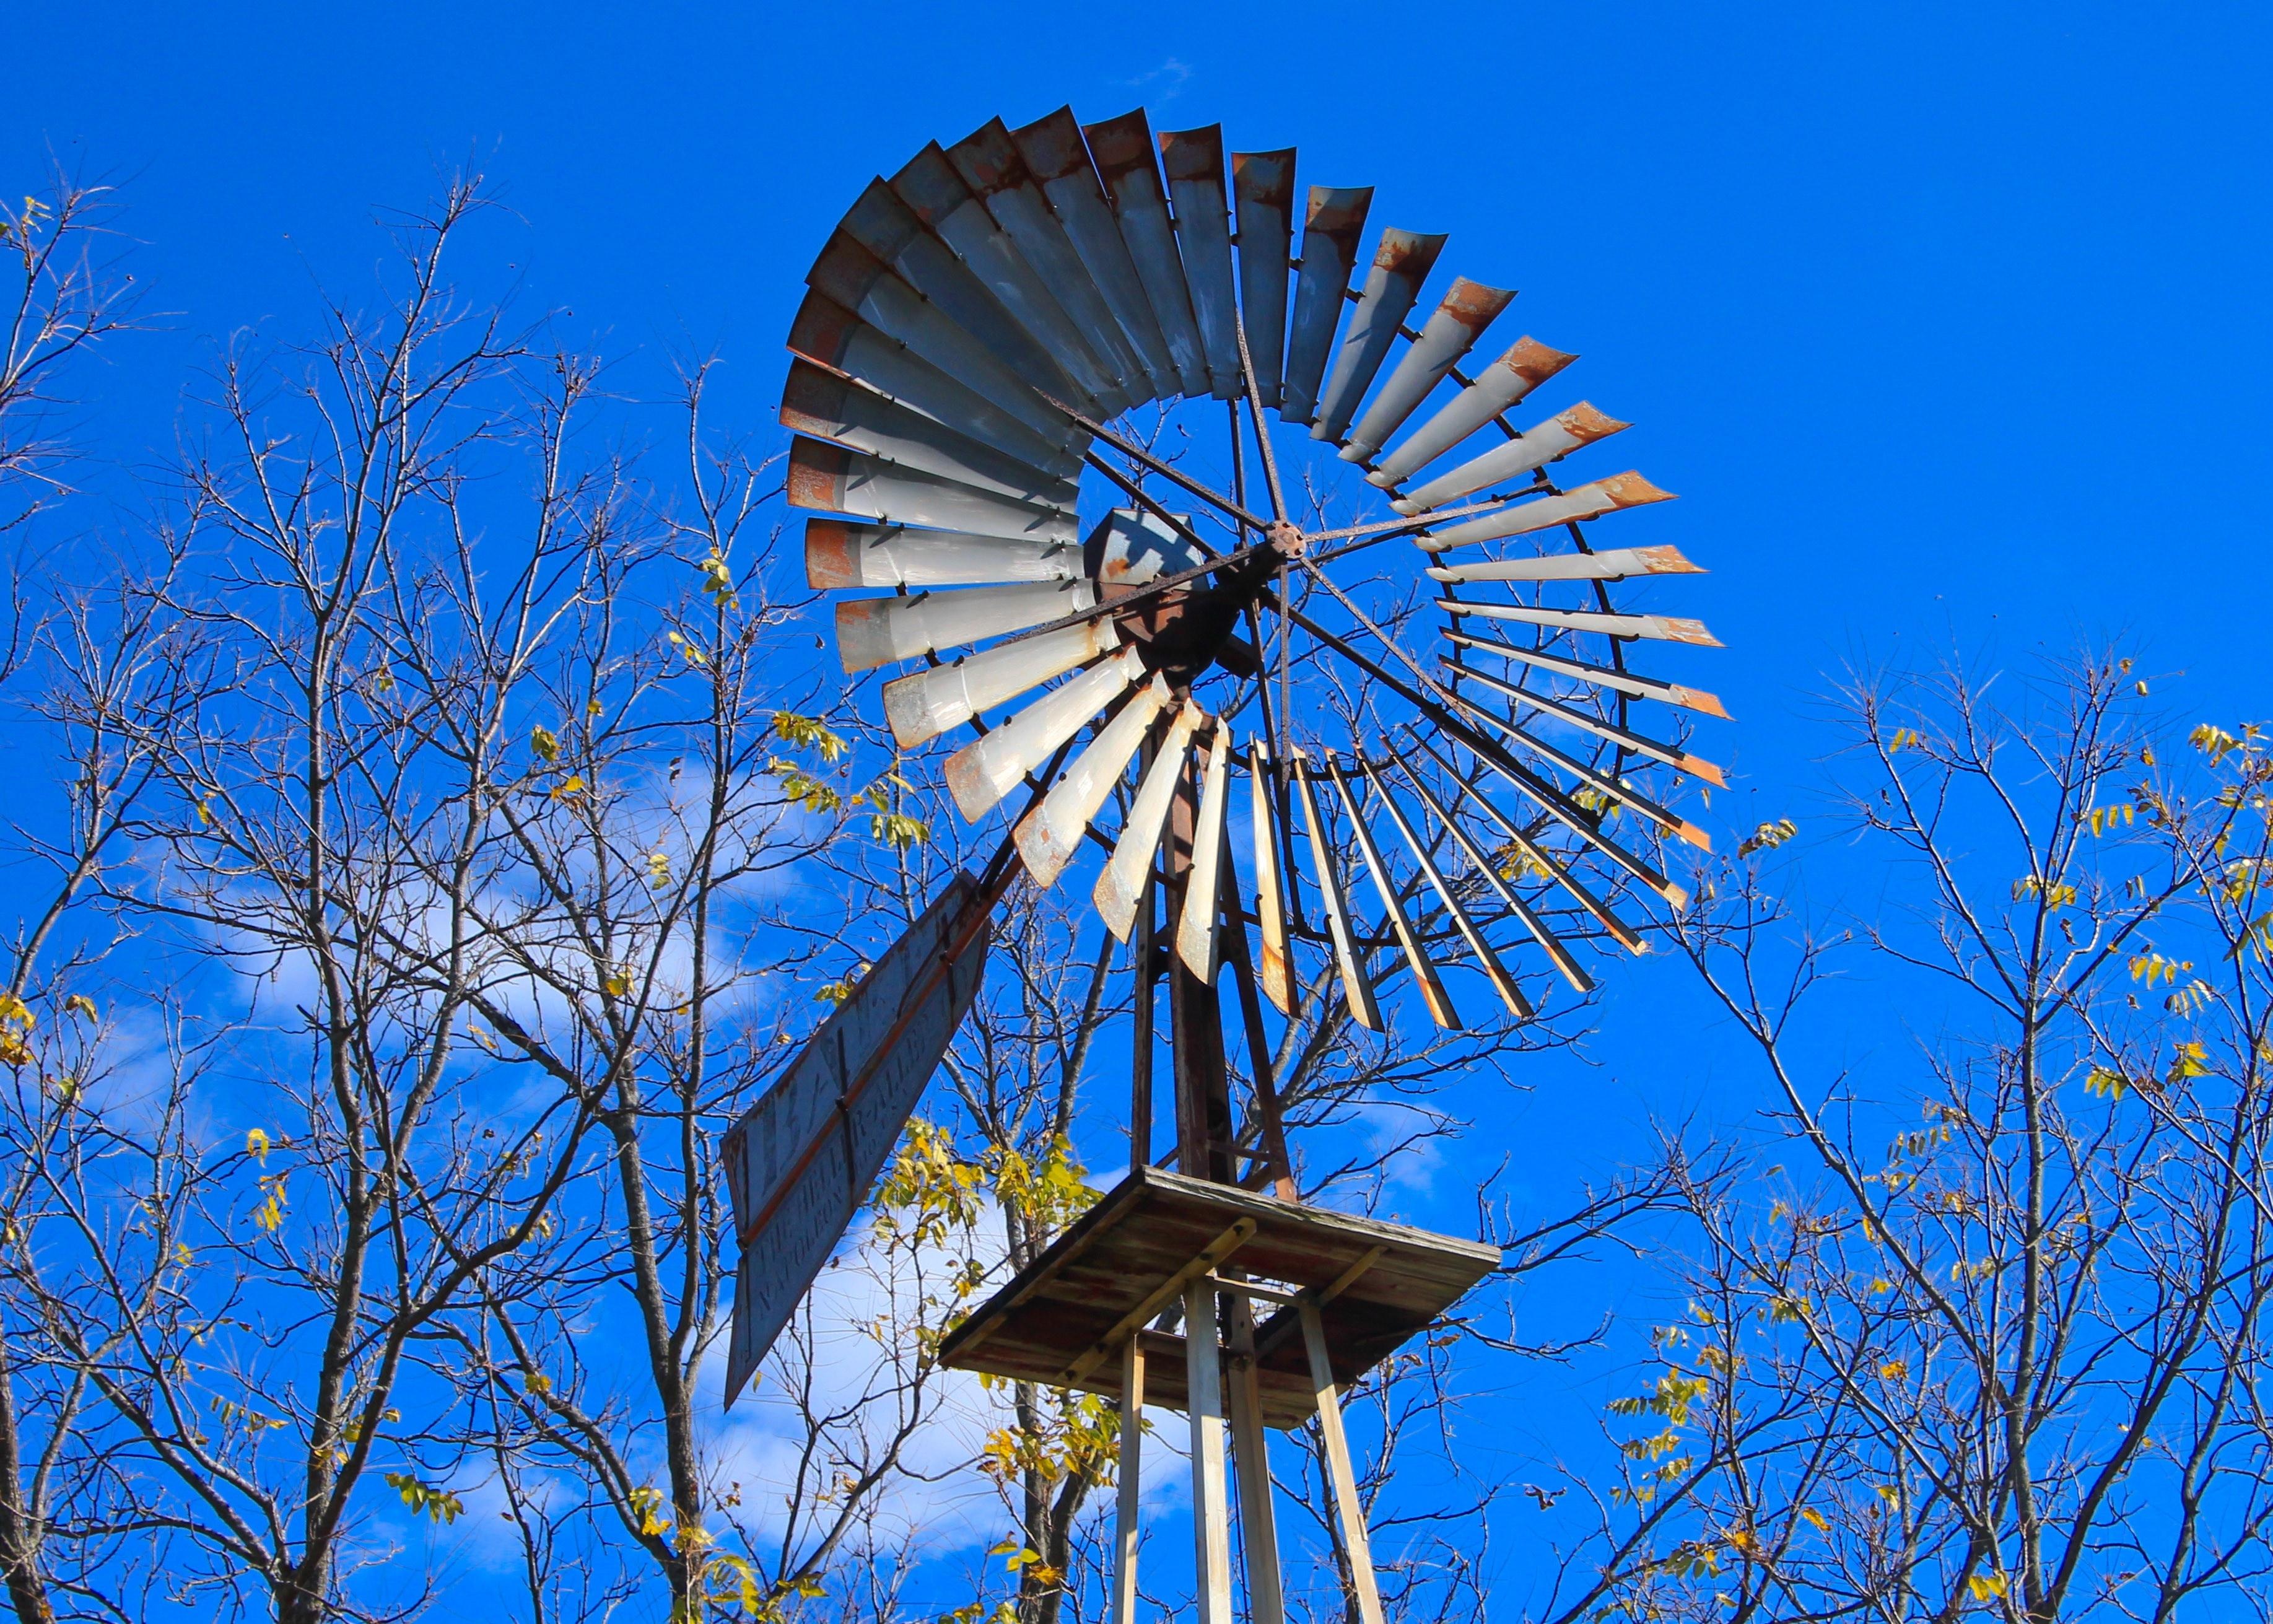 Farm, Windmill, Turbine, Wind, Rural, blue, ferris wheel